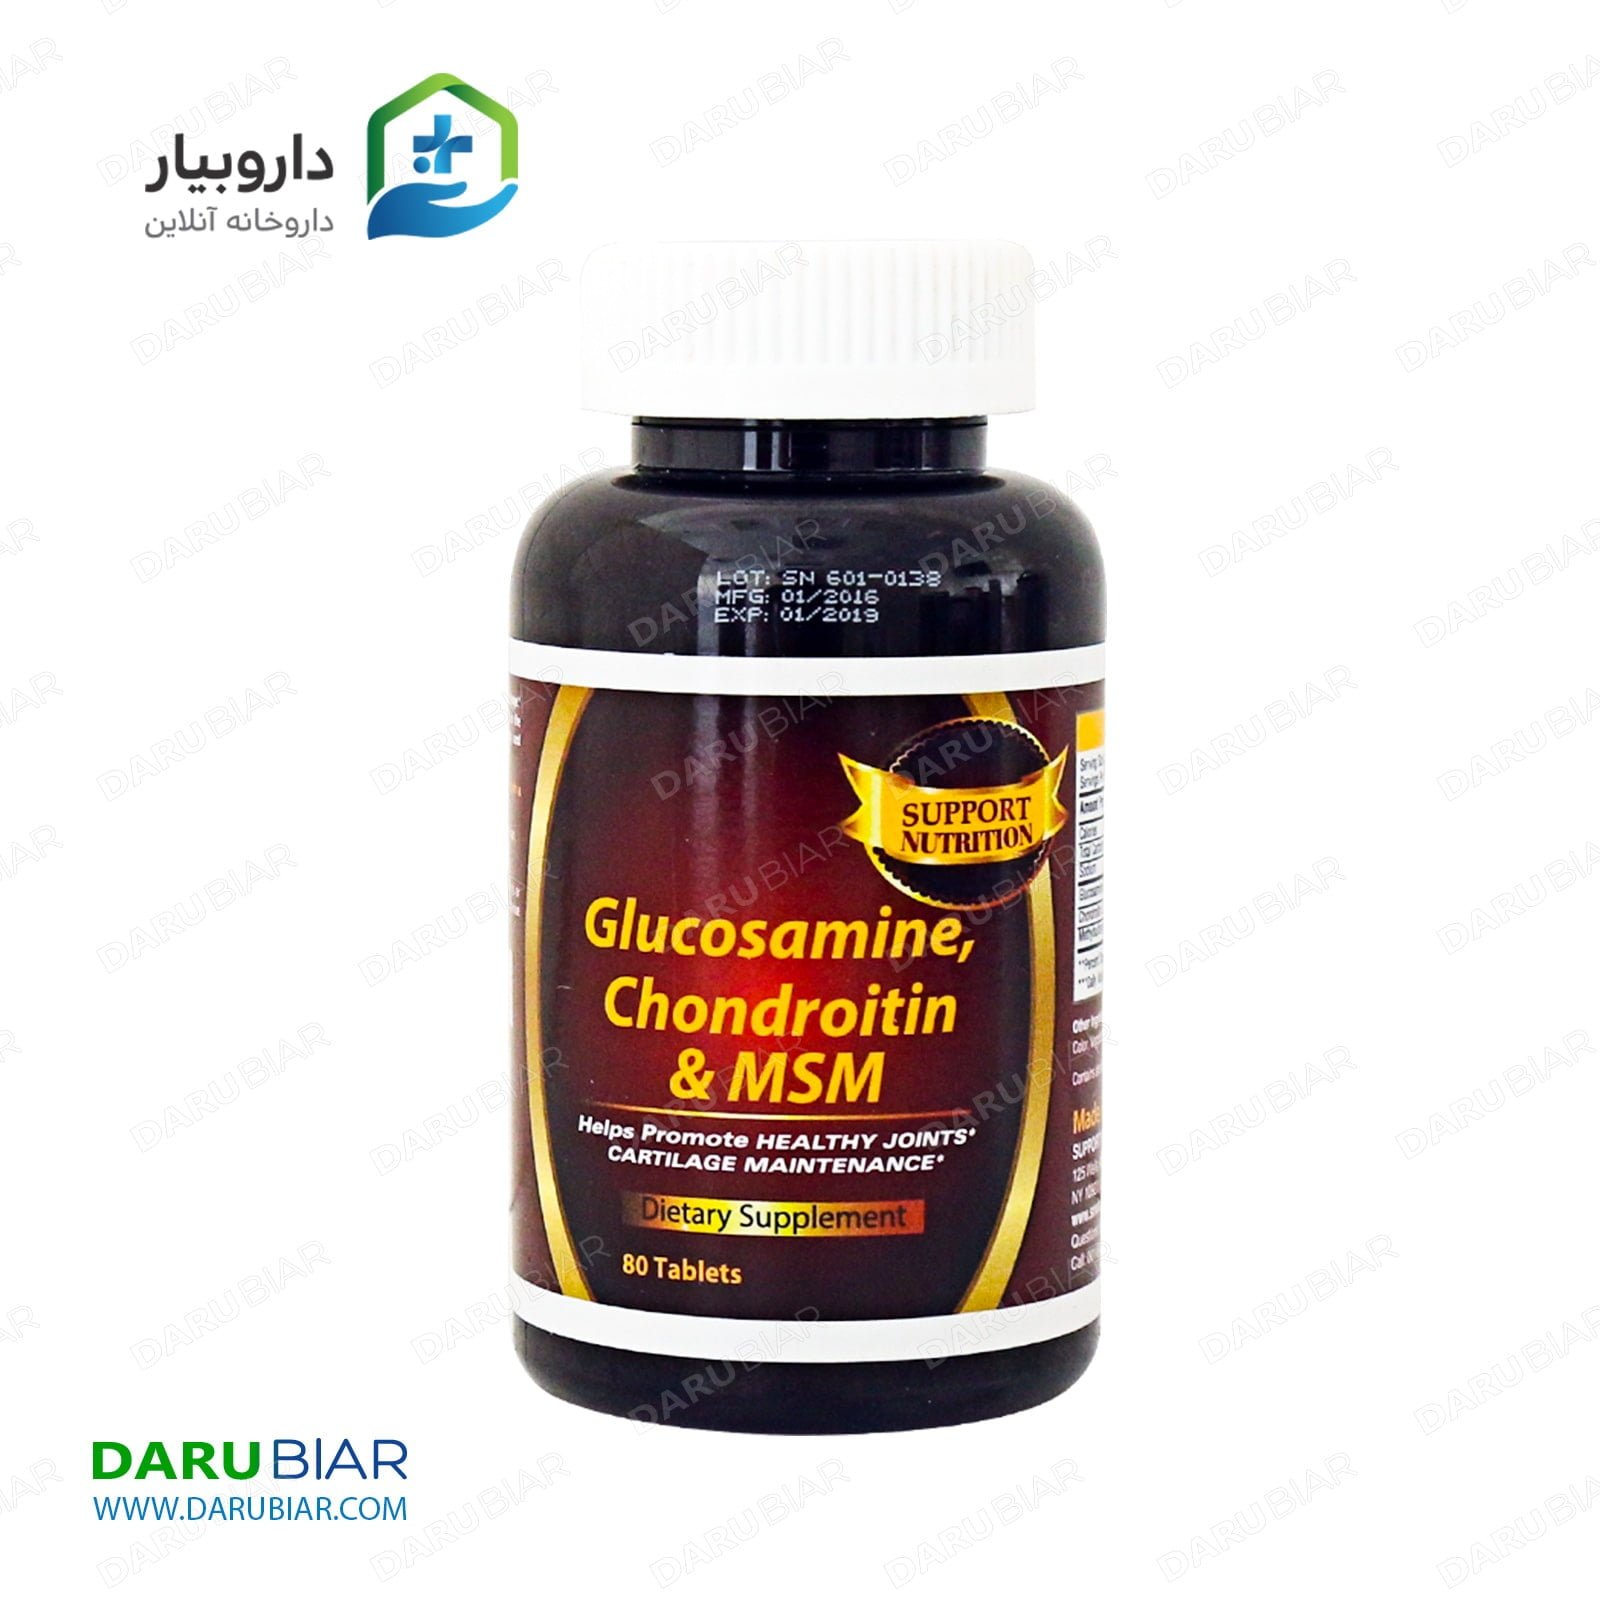 گلوکزامین کندرویتین ام اس ام-Glucosamine Chondroitin & MSM